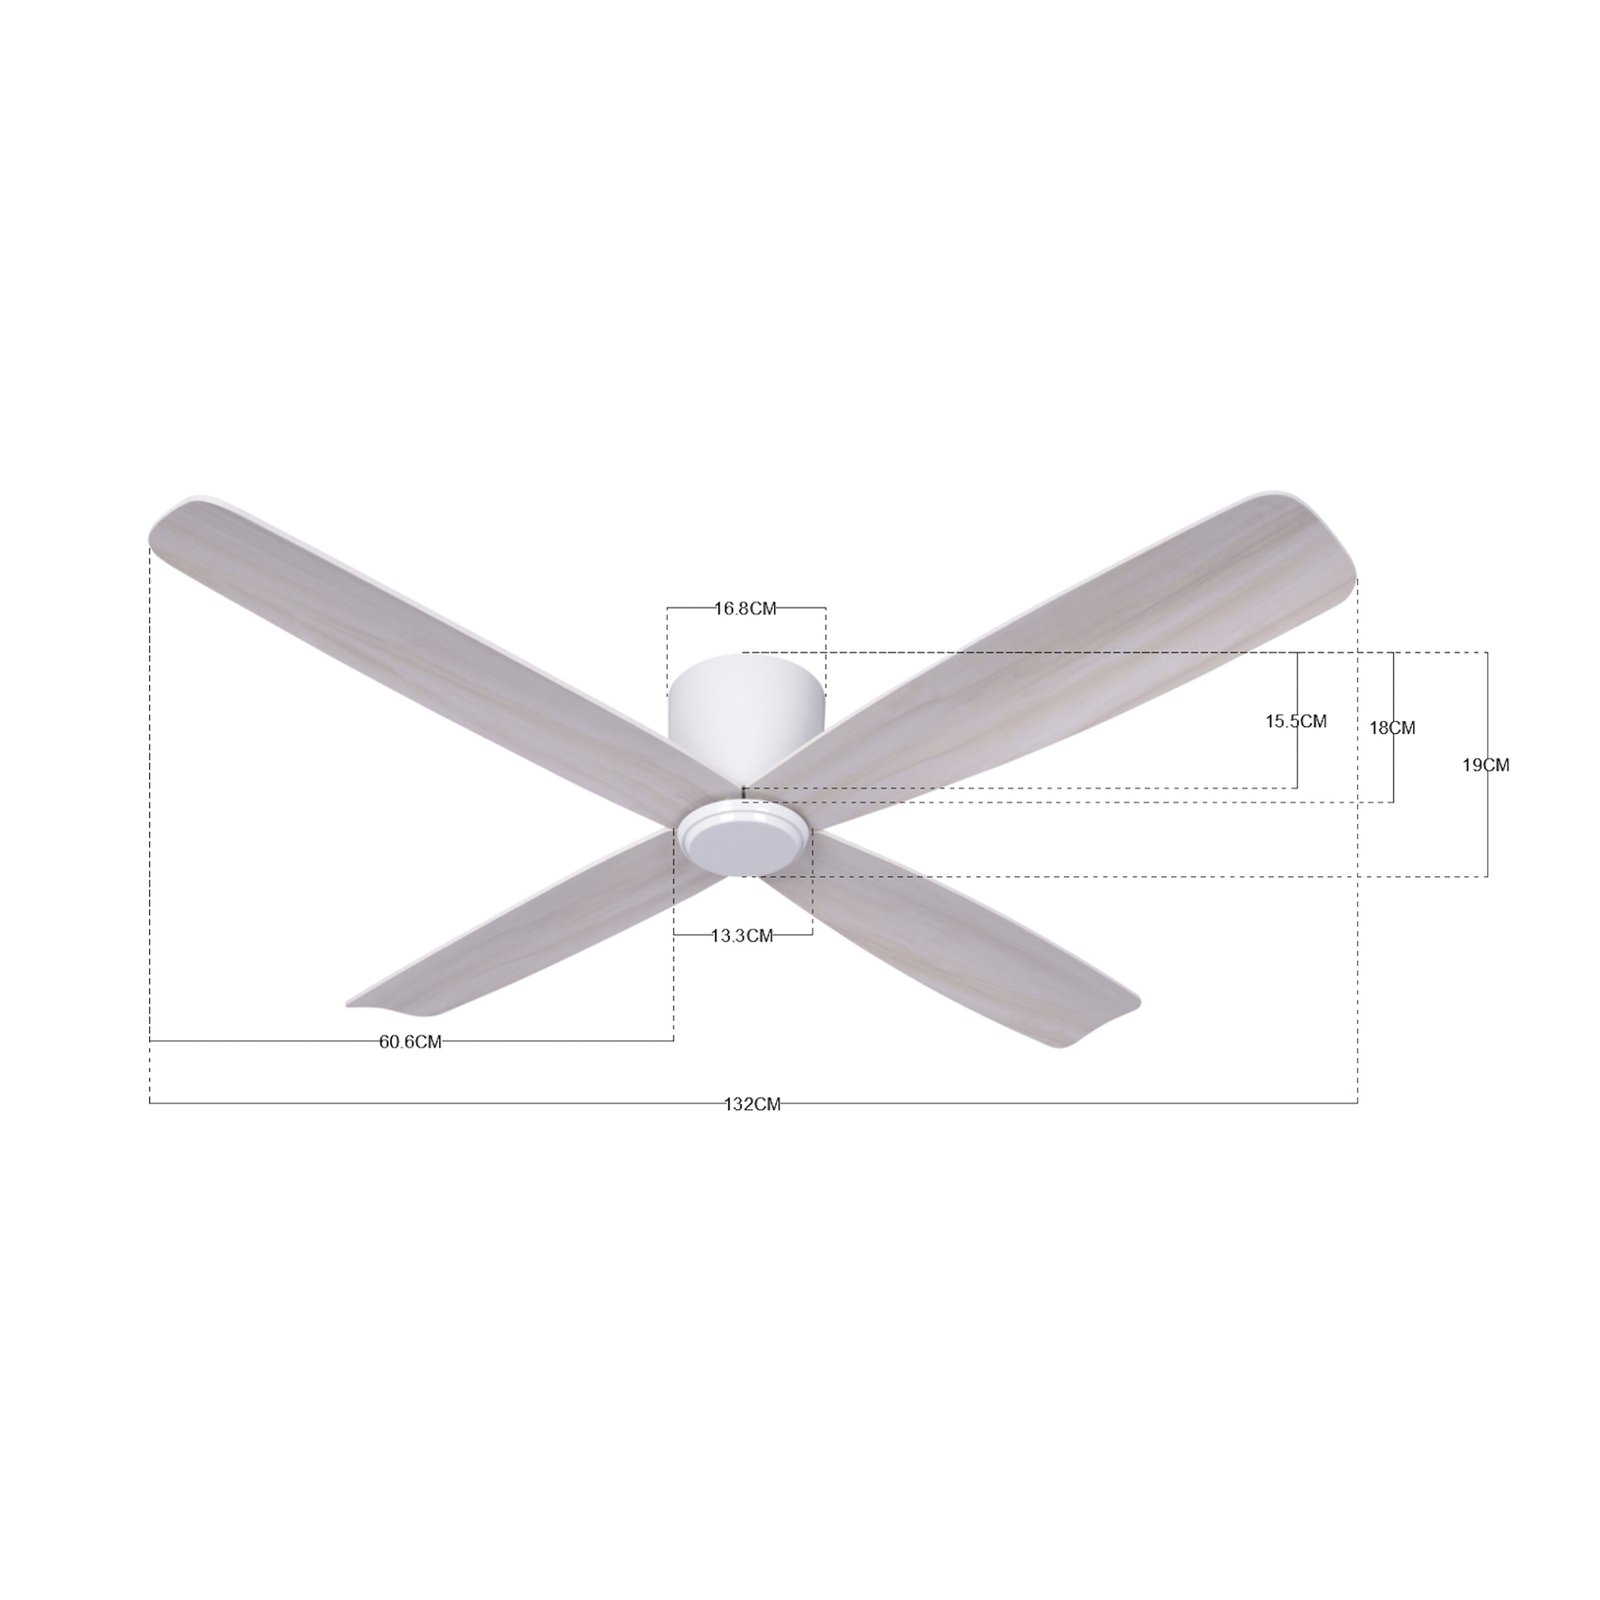 Beacon ceiling fan Fraser white/oak DC quiet Ø 132 cm